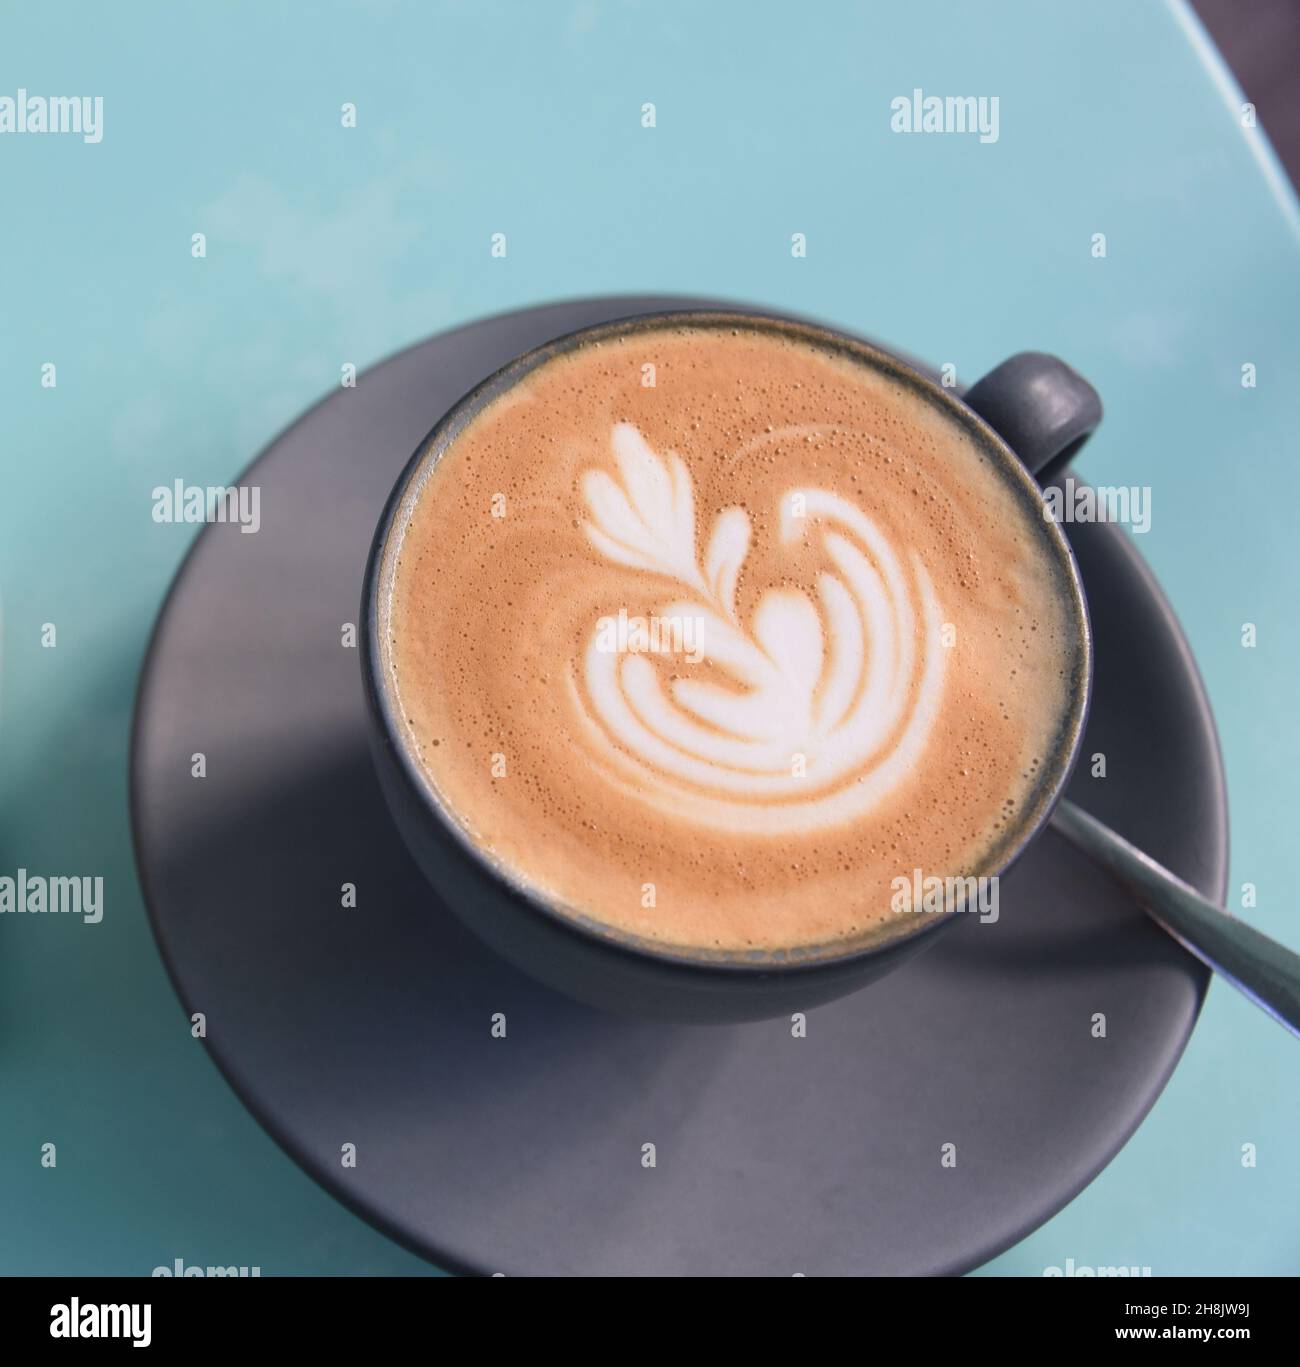 Großformatige Nahaufnahme eines Cappuccino-Kaffees mit einem ausgefallenen Design im Schaumstoff. Serviert auf der Terrasse eines Restaurants in Savannah, Georgia. Stockfoto